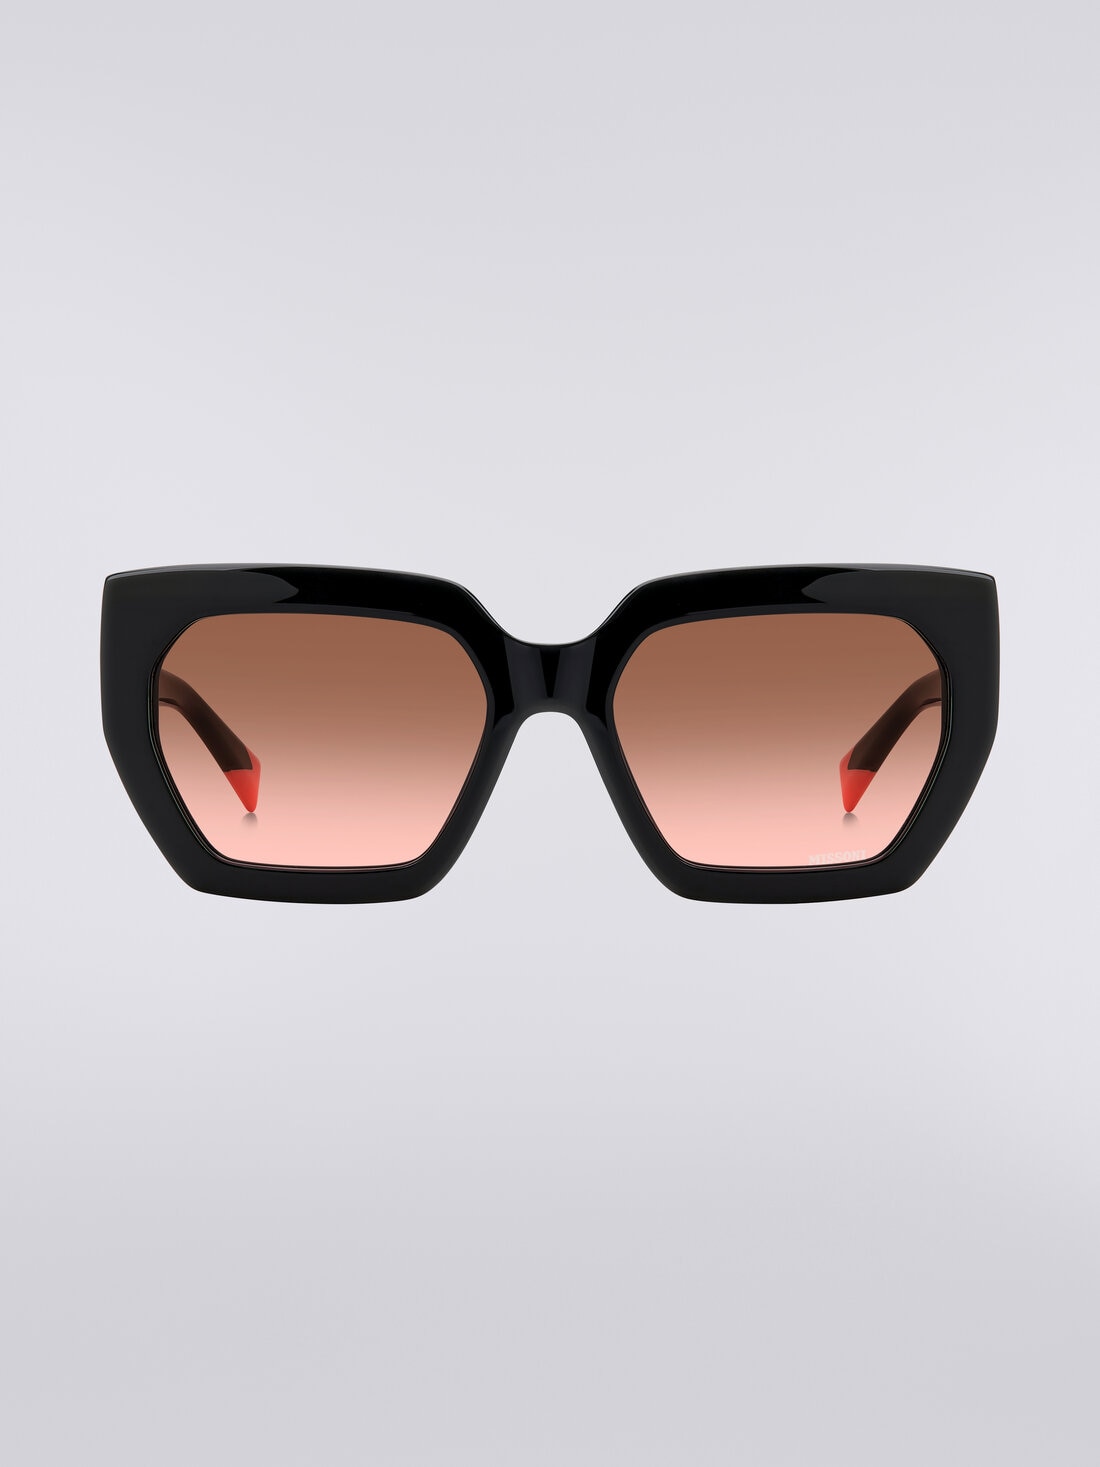 Sonnenbrille mit quadratischer Fassung, kontrastierendem Einsatz und Logo, Mehrfarbig  - 8053147194912 - 0